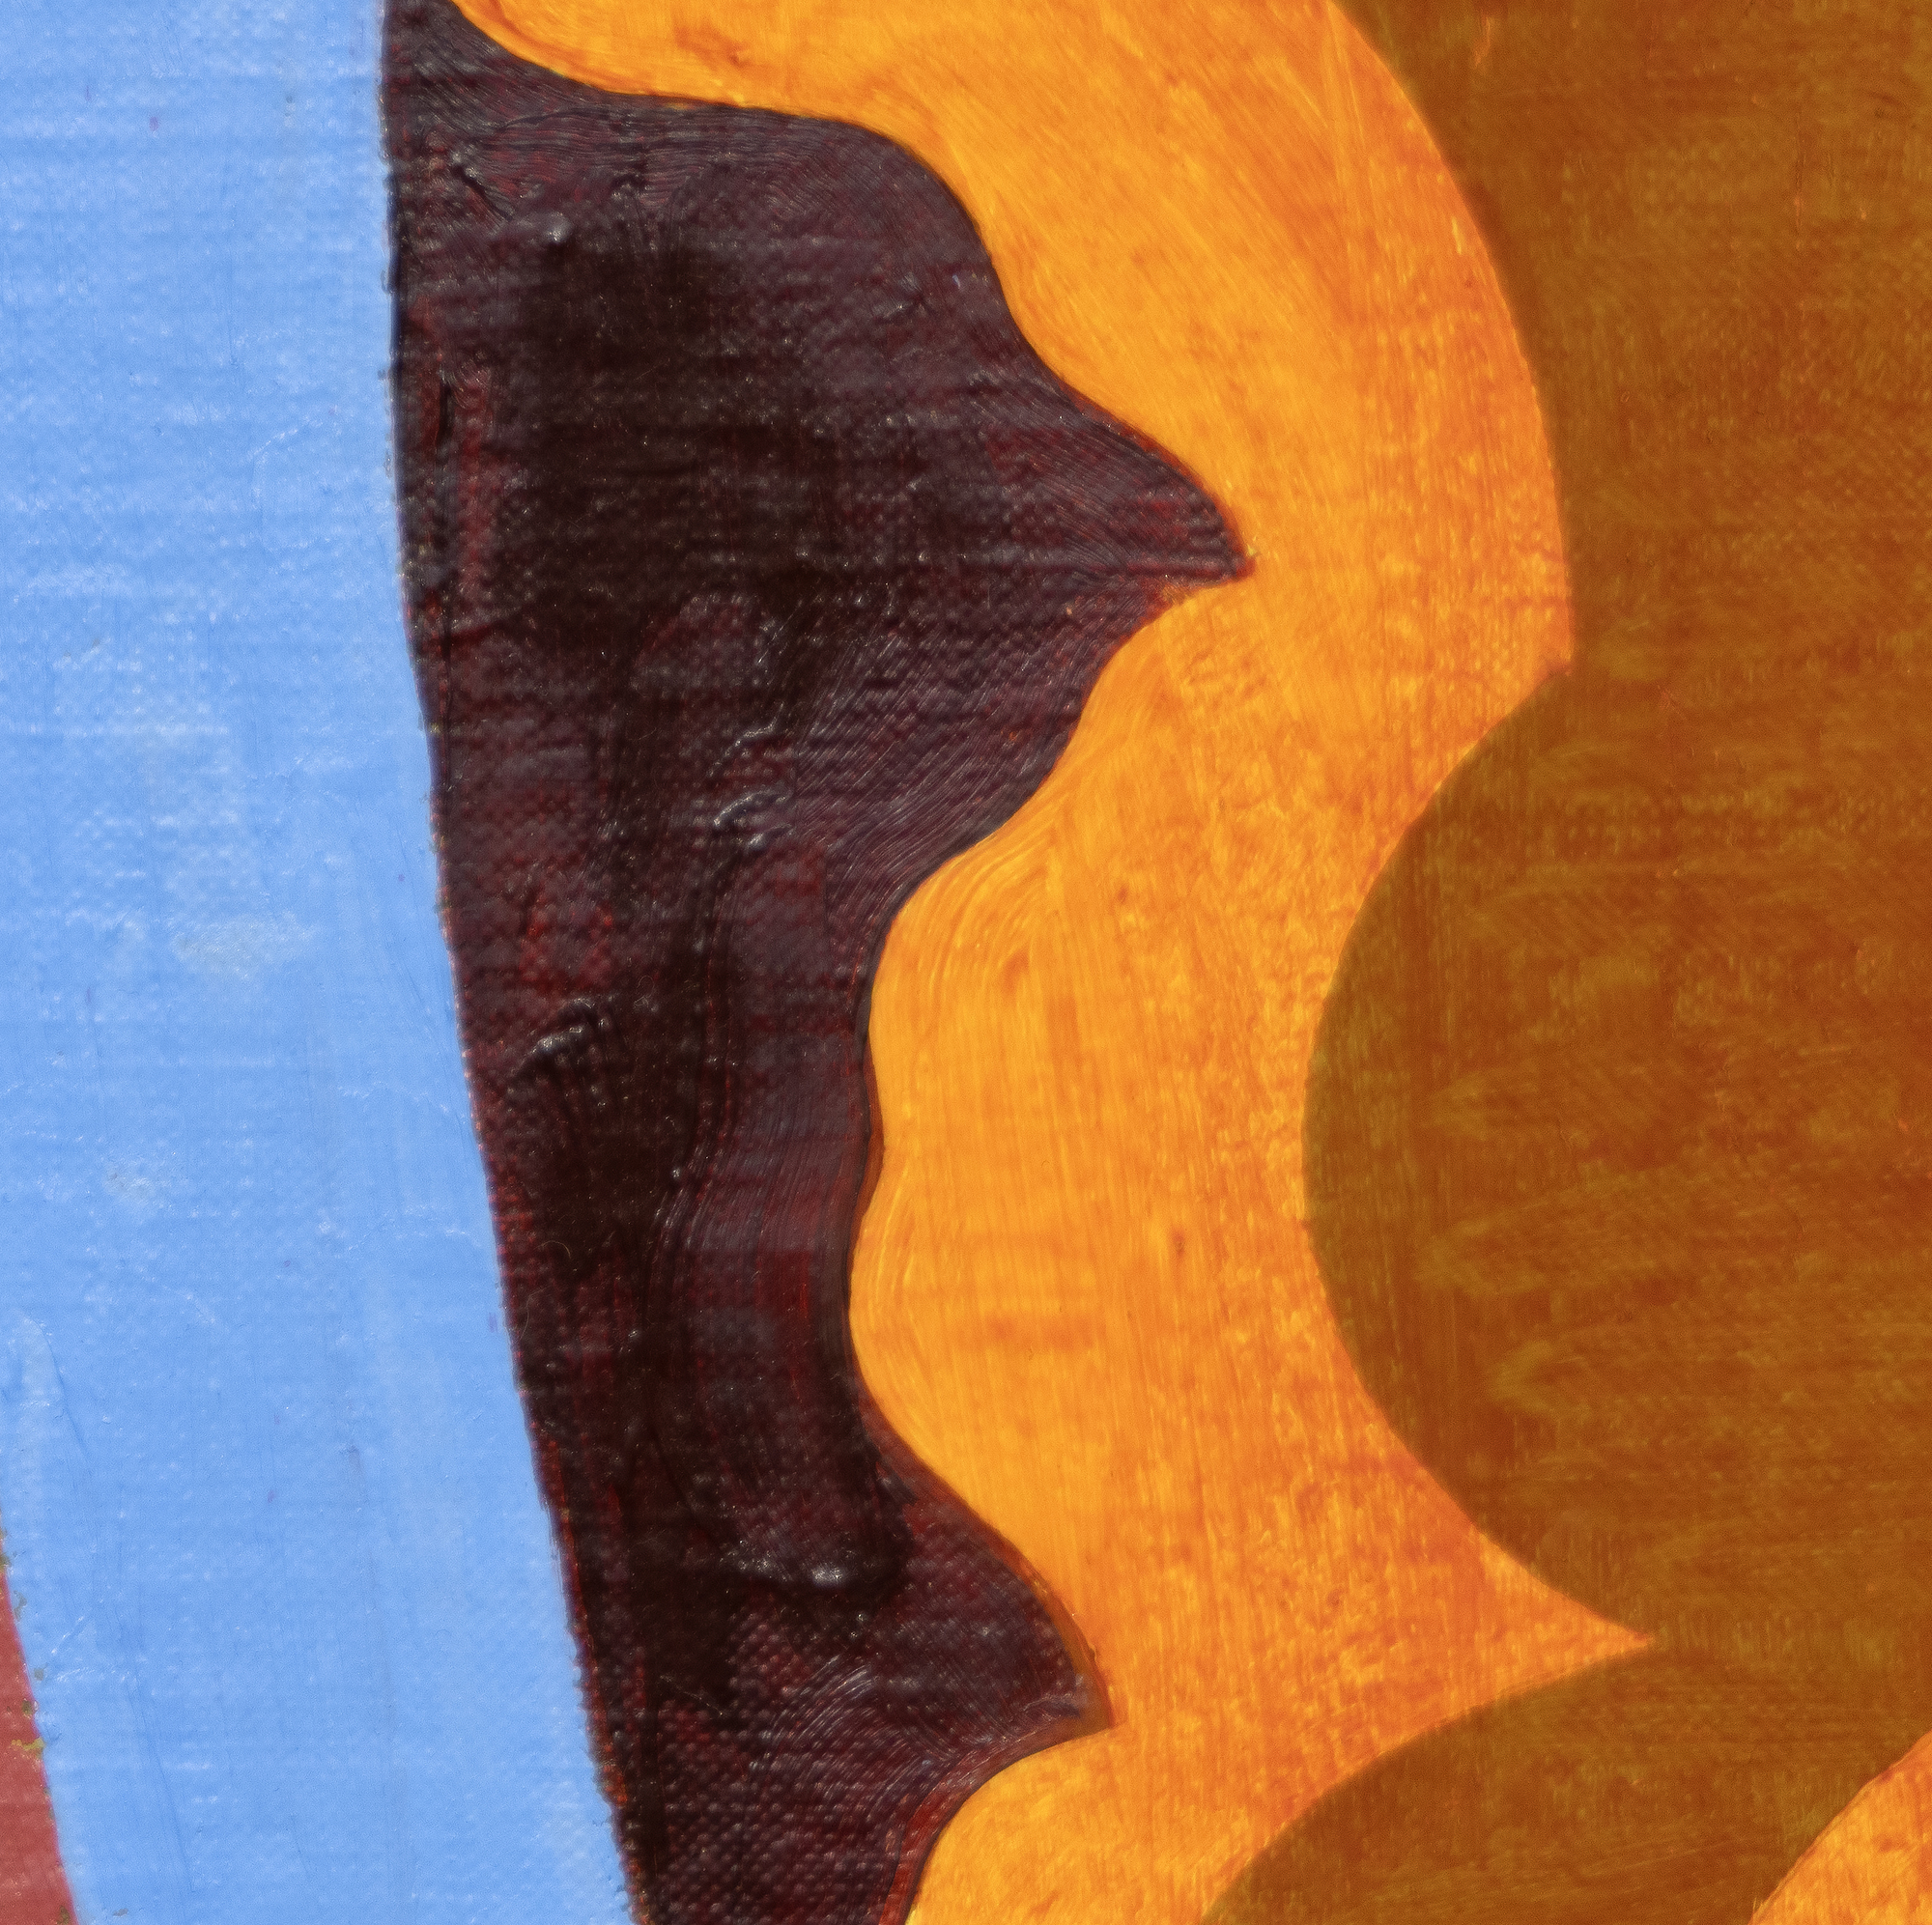 托马斯-诺兹科夫斯基出生于1944年，他创作了一些小幅的、色调丰富的画作，反映了抽象表现主义者和包豪斯难民的二元影响，他曾在库珀联盟学习。他使用小画笔，他的处理方式包括刮擦和擦掉颜料，这些都会在作品中得到体现。他开发了一个独特的，广泛的词汇，在不同的配色方案和广泛的联想中部署生物形态般的几何形式：瓷砖地板，细胞群，建筑和外太空。这些作品往往是从他自己的记忆和经验中提炼出来的。诺兹科夫斯基评论这幅具体的画作（《无题》，1994年）时说，这幅画反映了他对文艺复兴时期卡松多雷胸板上所画的神话场景的迷恋。他说这是这个系列三四幅15"x30"的画中最好的一幅。诺兹科夫斯基多年来一直由佩斯画廊处理。他于2019年去世。